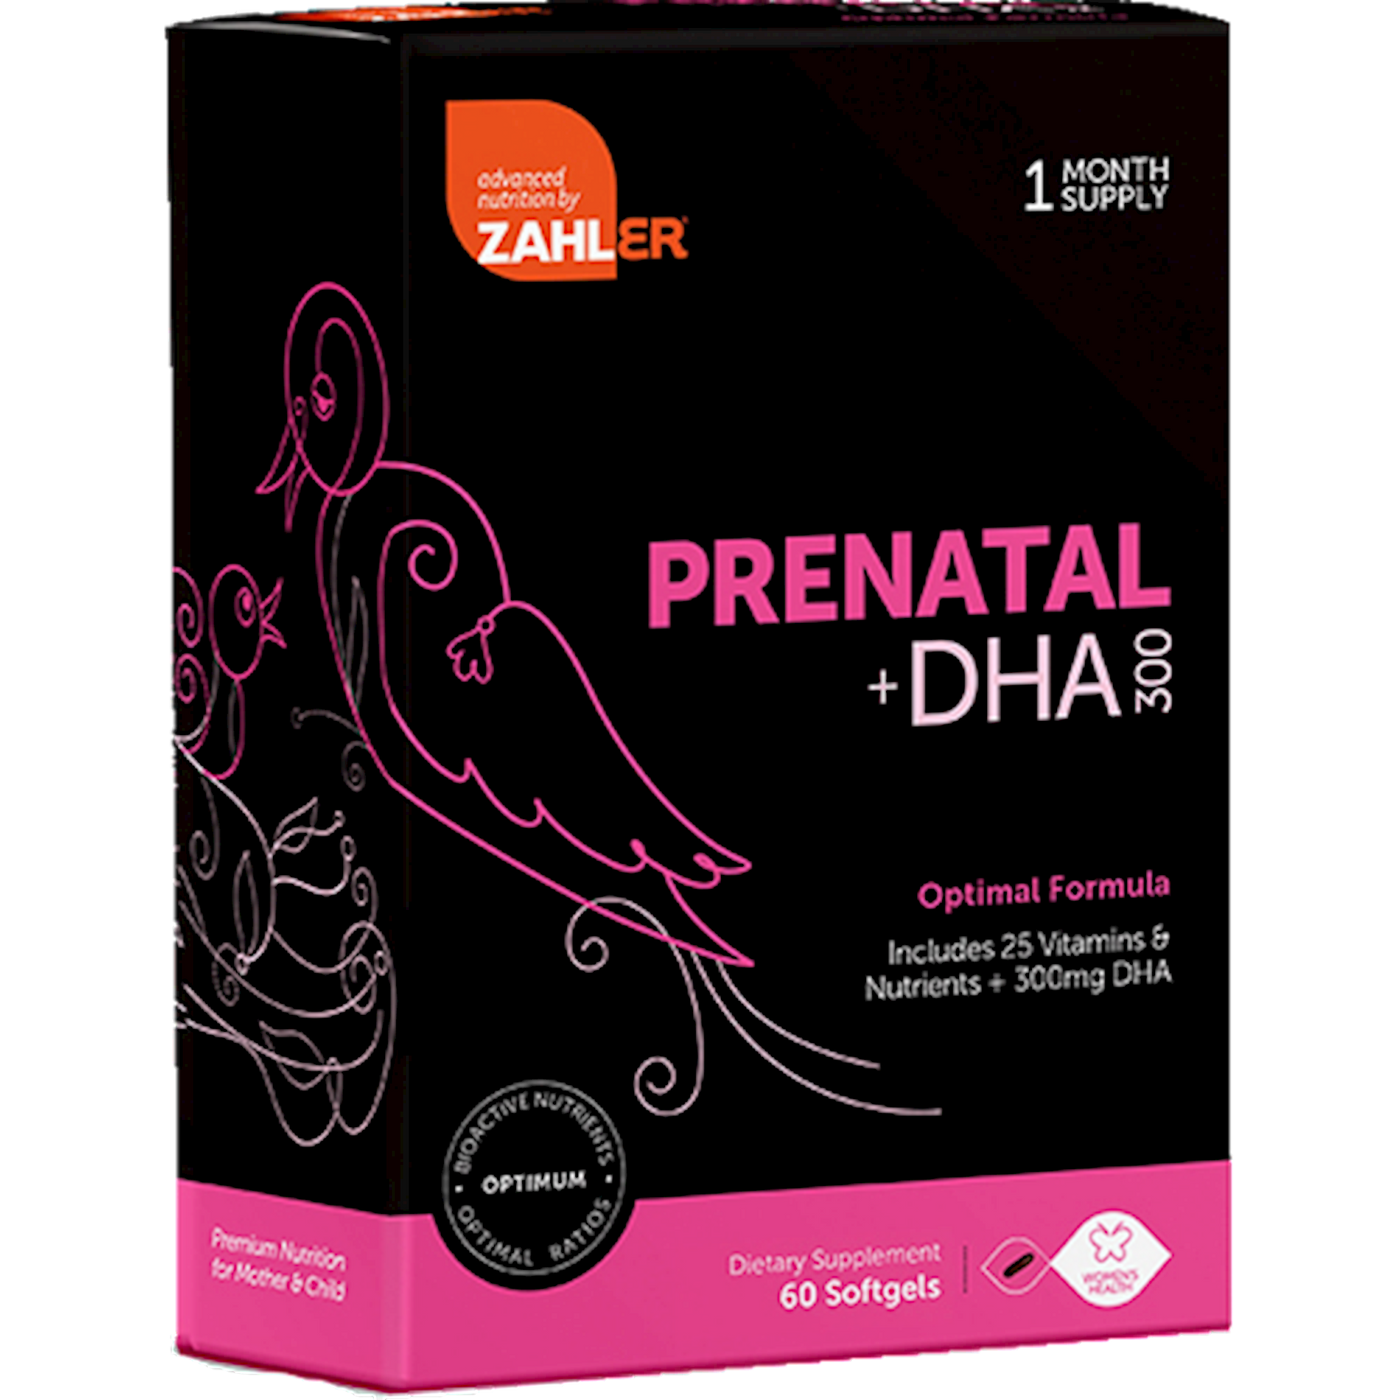 Prenatal +DHA Optimal  Curated Wellness